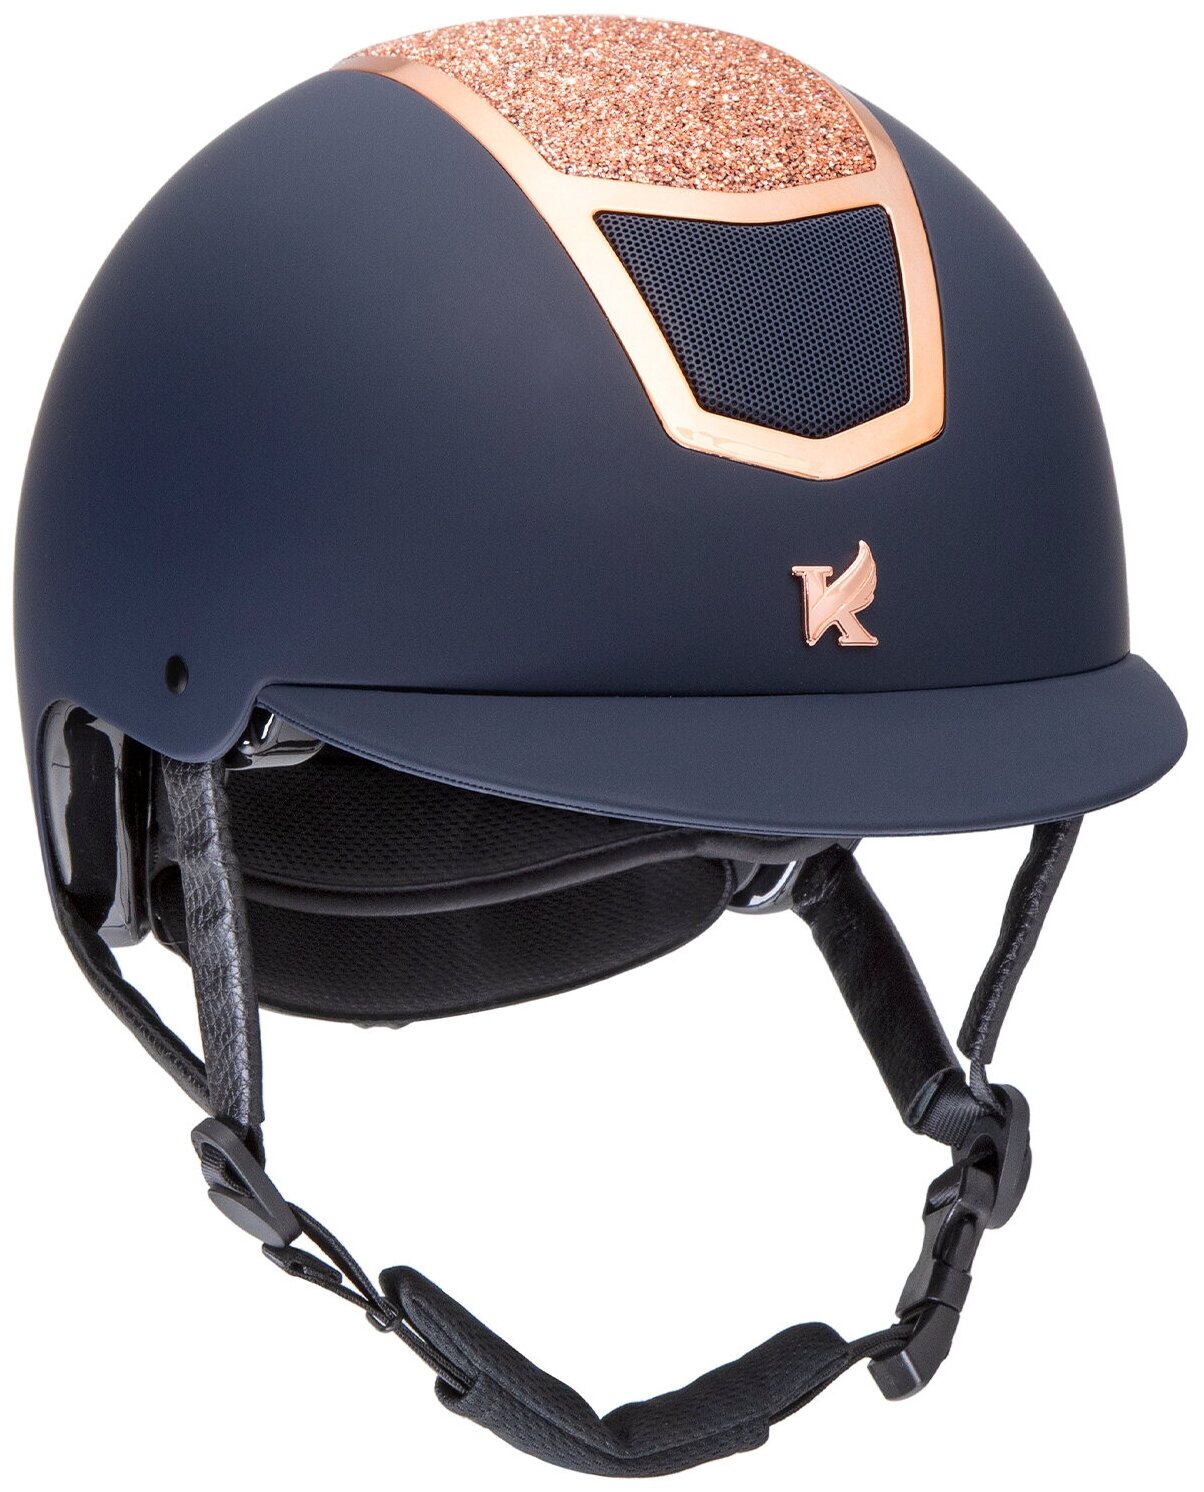 Шлем для верховой езды с регулировкой SHIRES Karben "Valentina", обхват головы 56-58 см, синий/розовое золото (Великобритания)